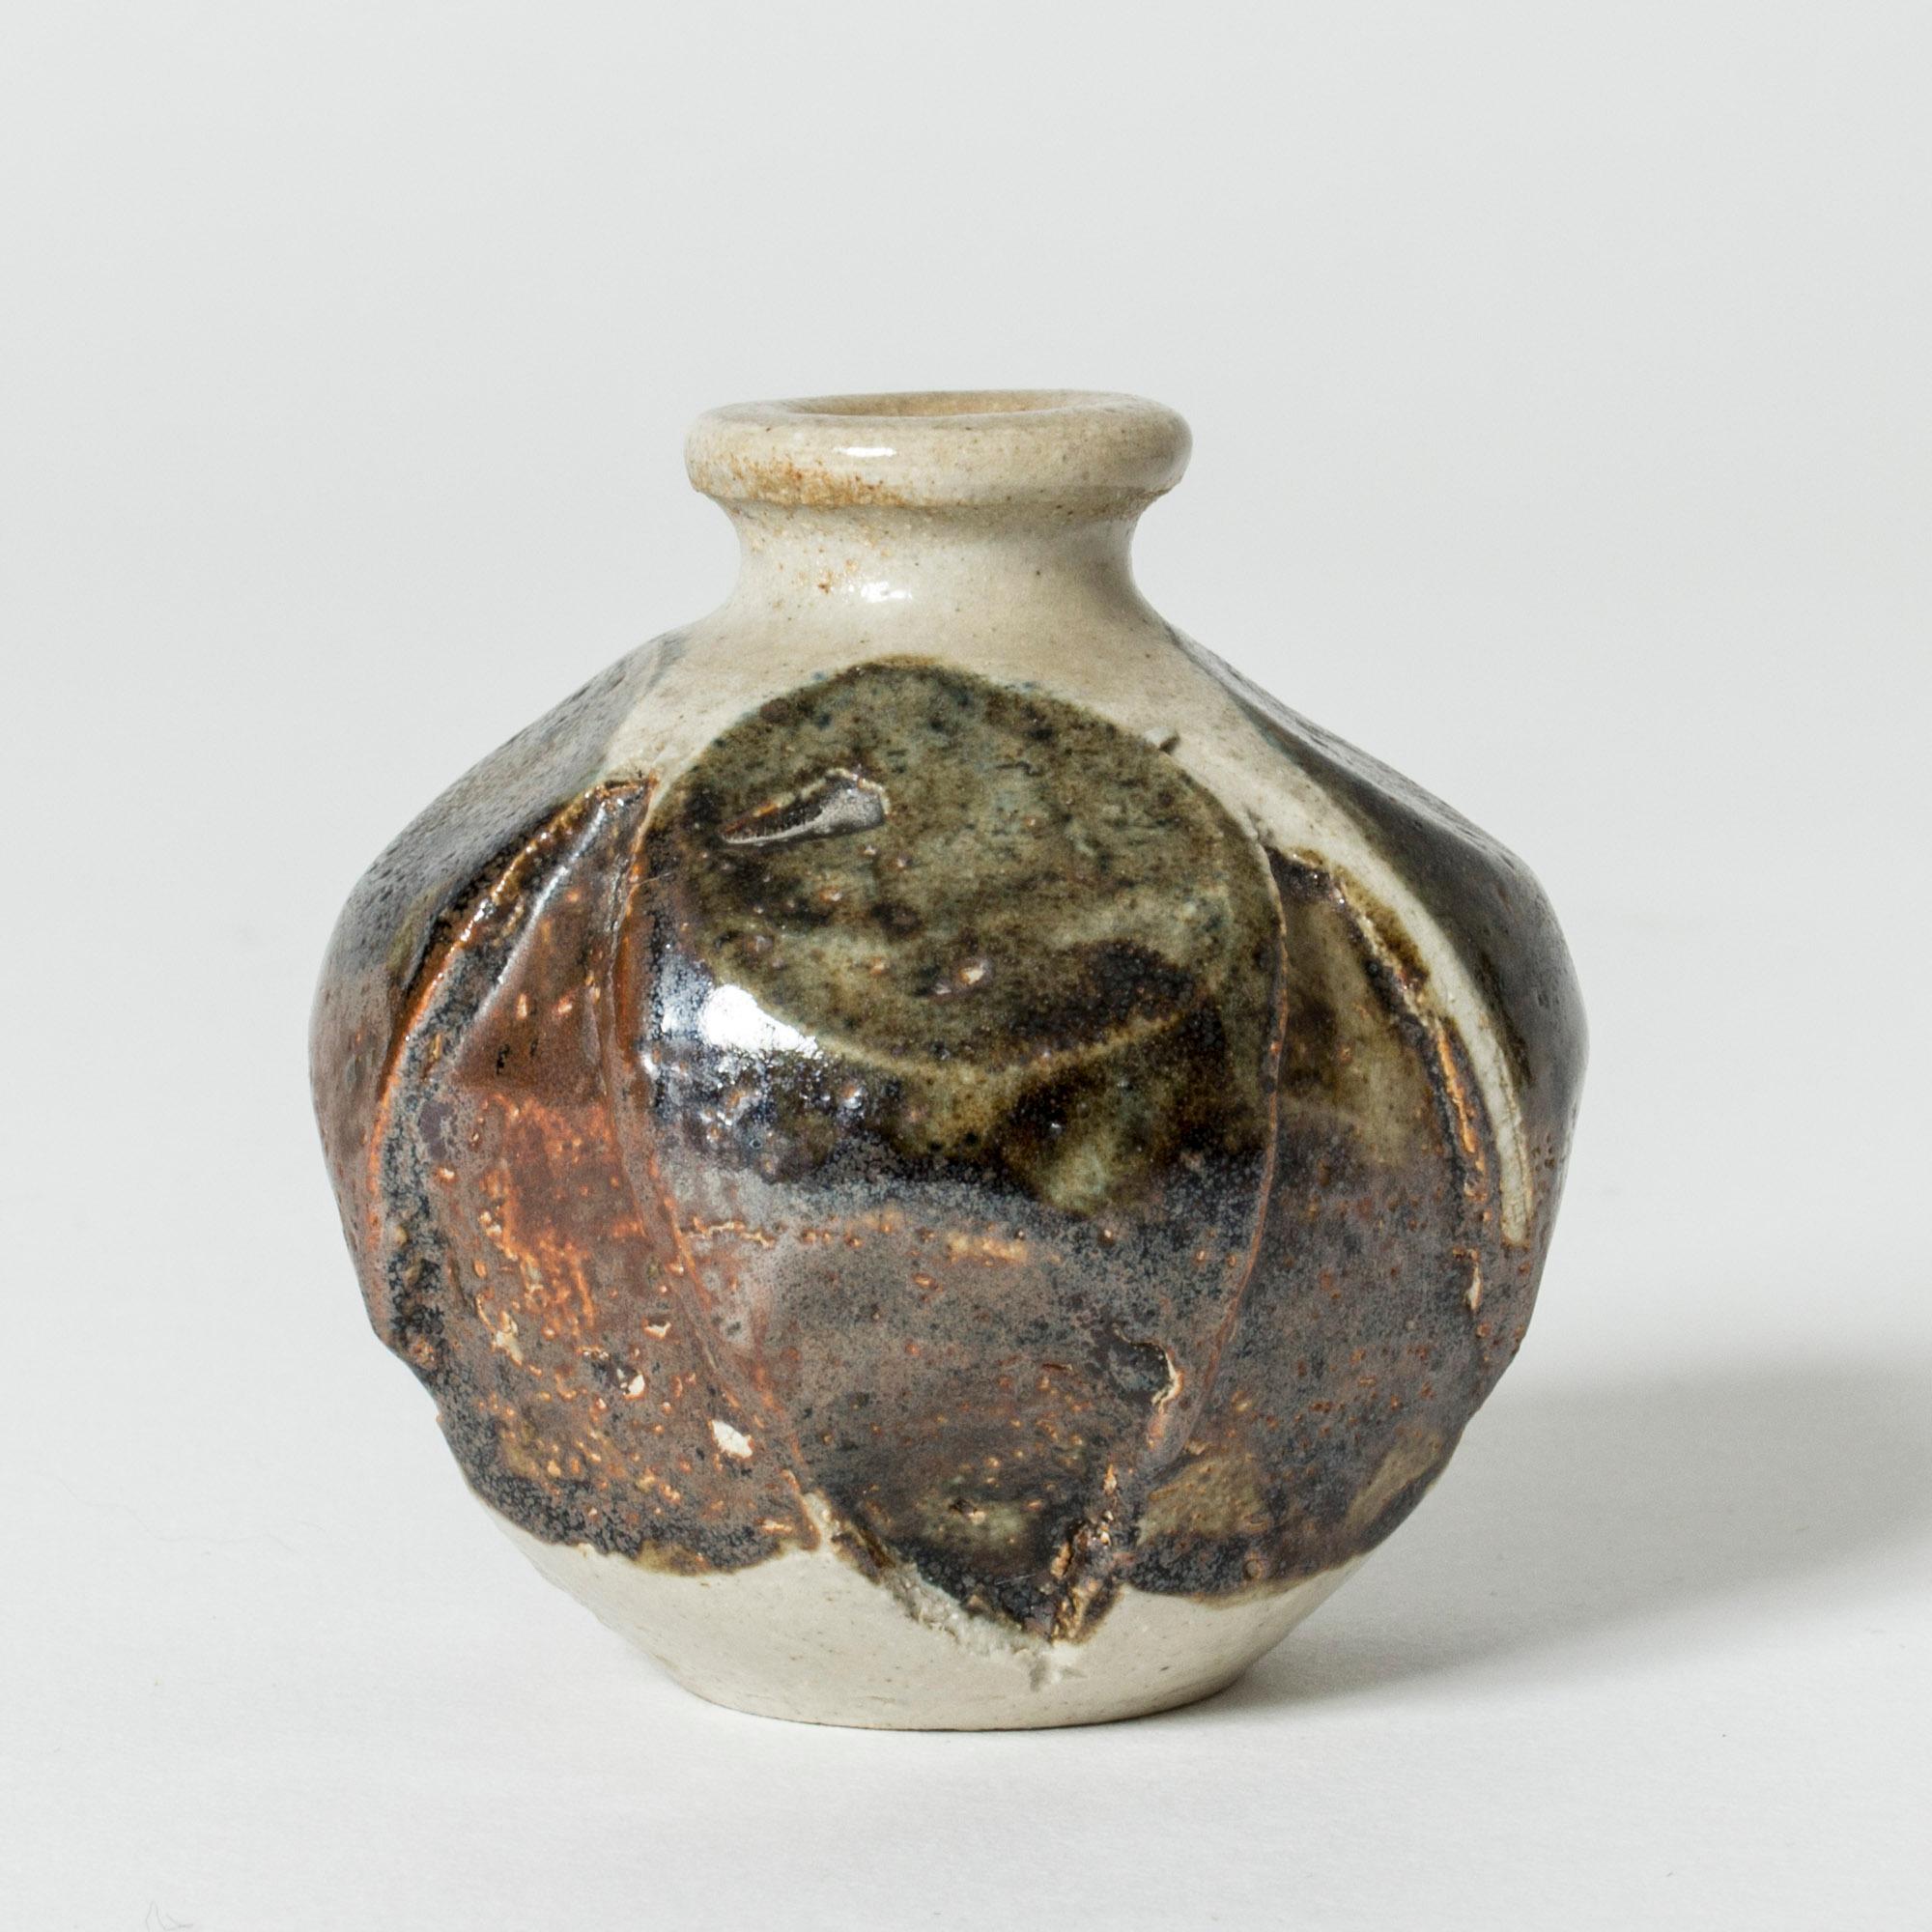 Miniatur-Vase aus Steinzeug von Anders B. Liljefors, pflaumenförmig mit strukturierter Oberfläche. Teilweise glasiert in Rost- und Brauntönen.

Anders B. Liljefors war ein schwedischer Keramiker, Bildhauer und Maler. Er verbrachte insgesamt zehn